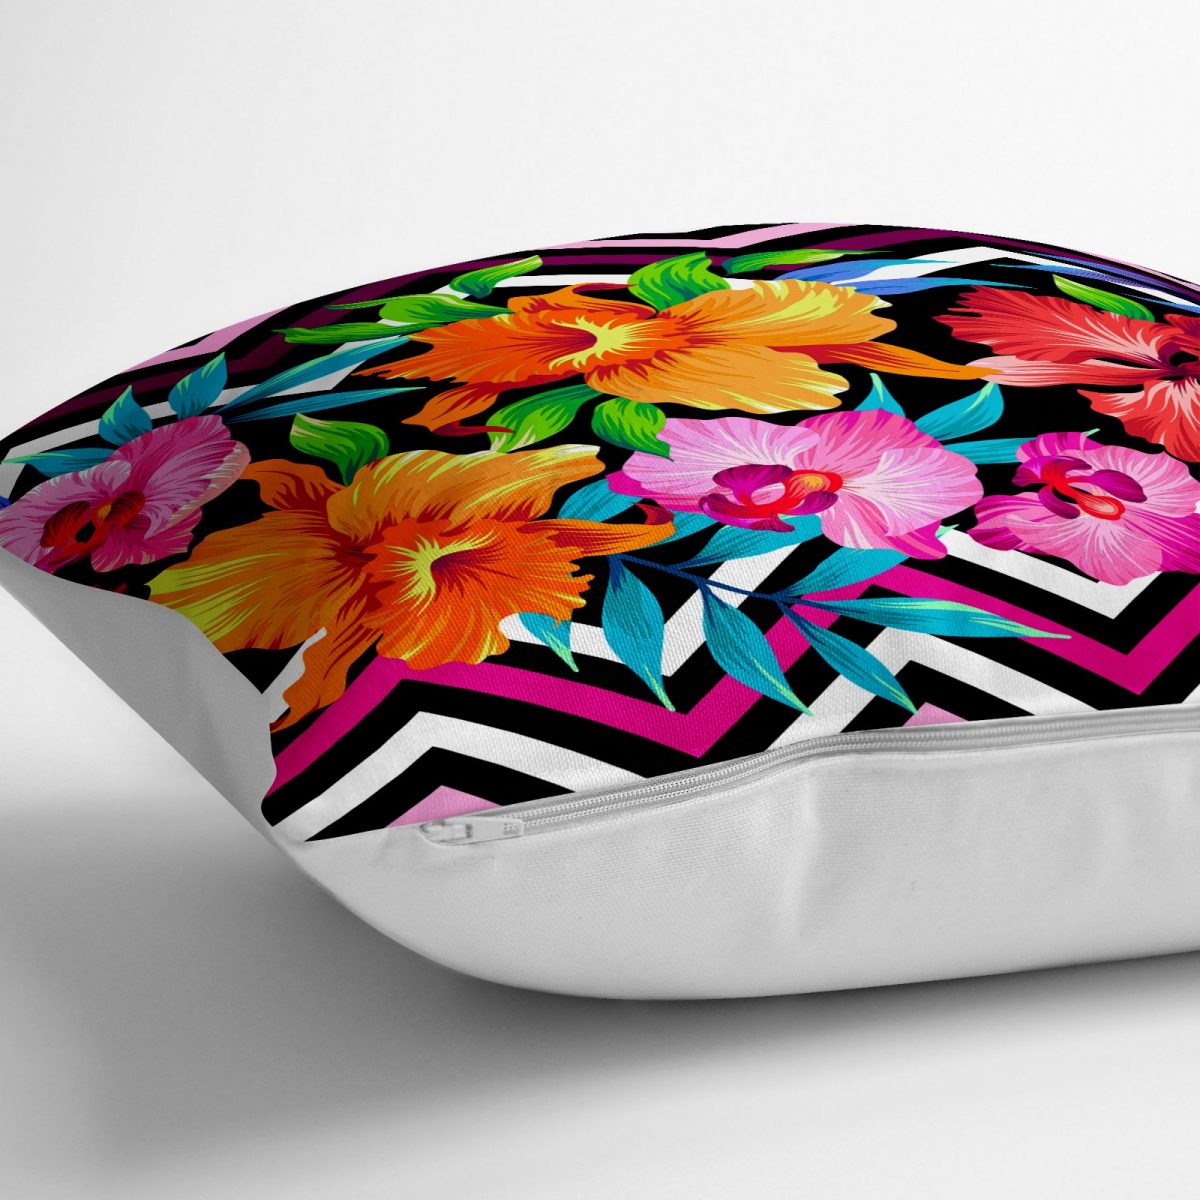 Zigzag ve Çiçekler Özel Tasarım Dekoratif Yer Minderi - 70 x 70 cm Realhomes